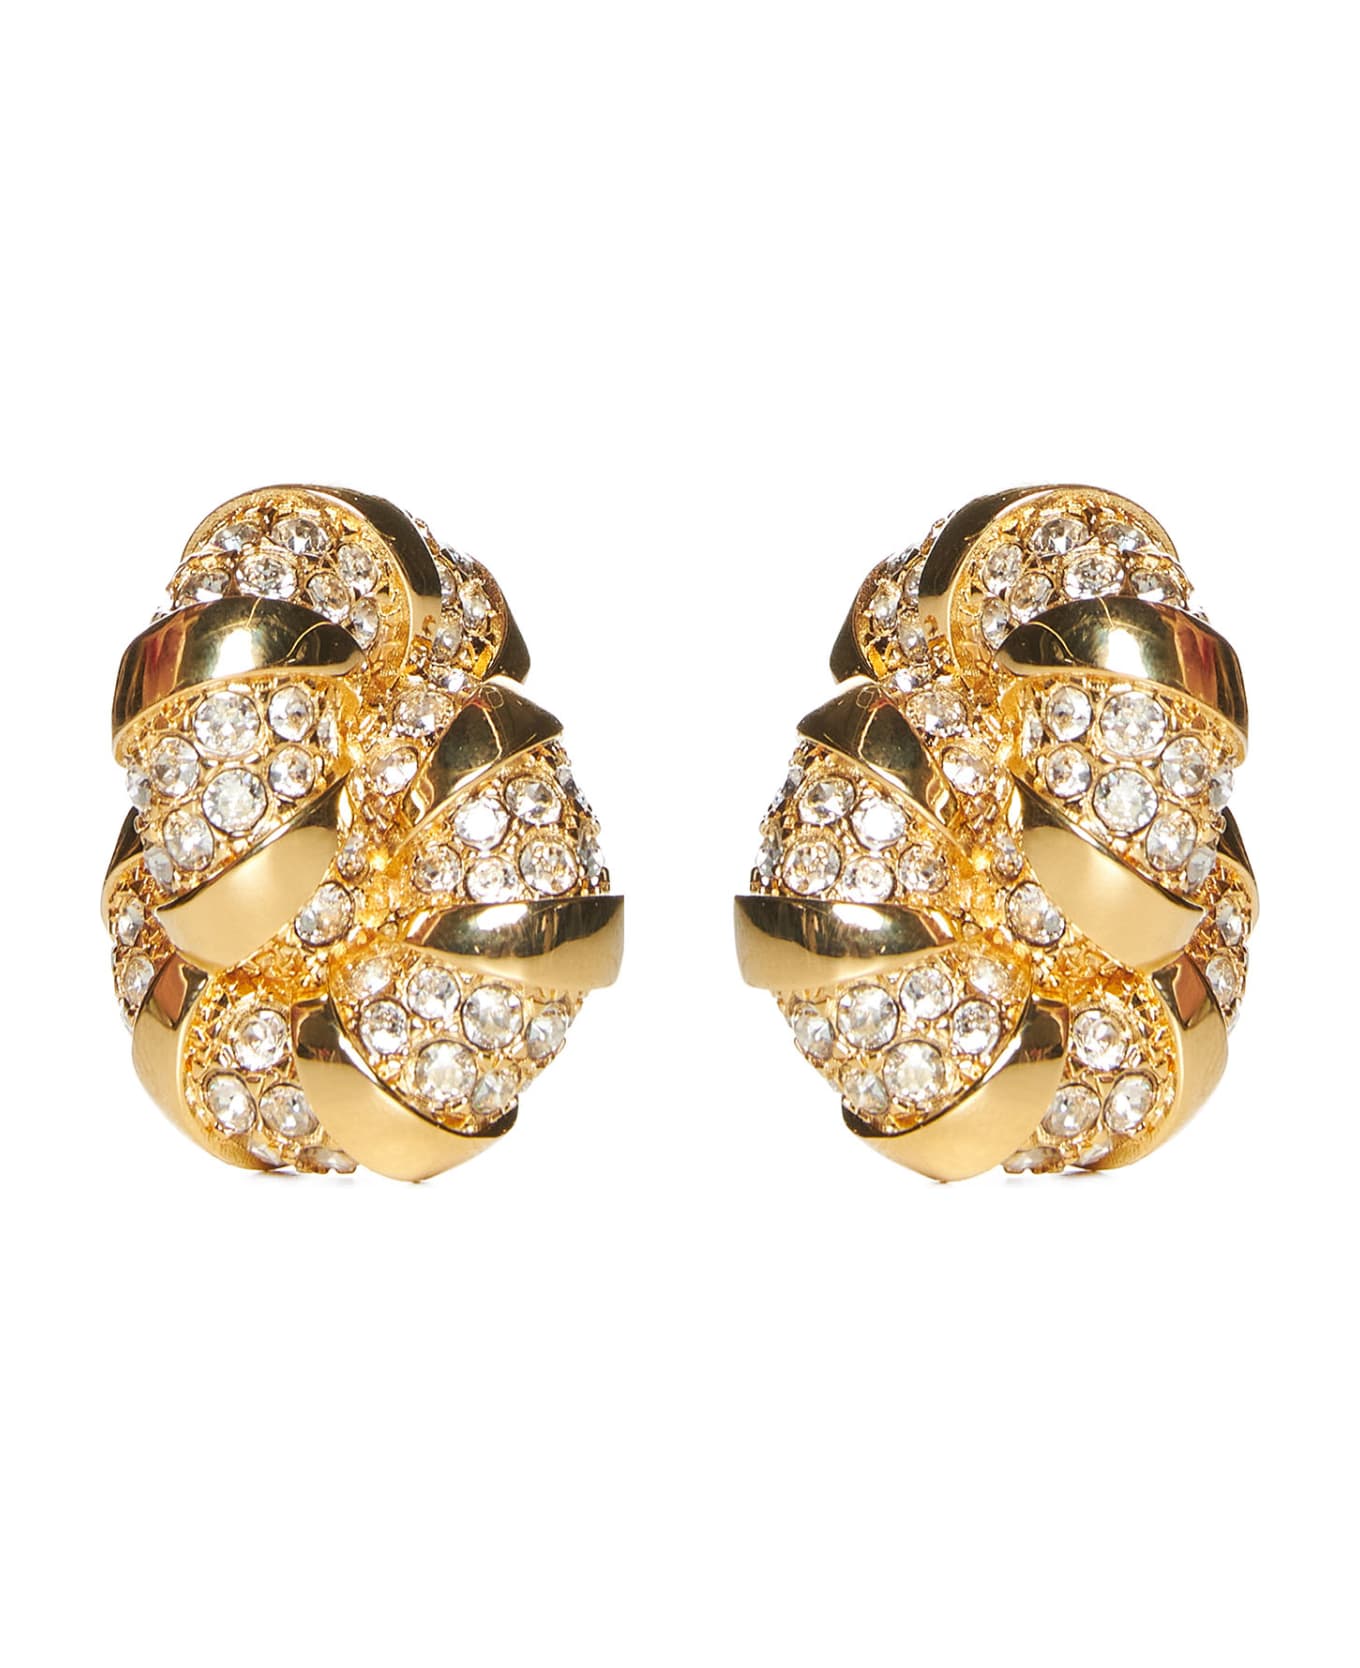 Lanvin Earrings - Gold crystal